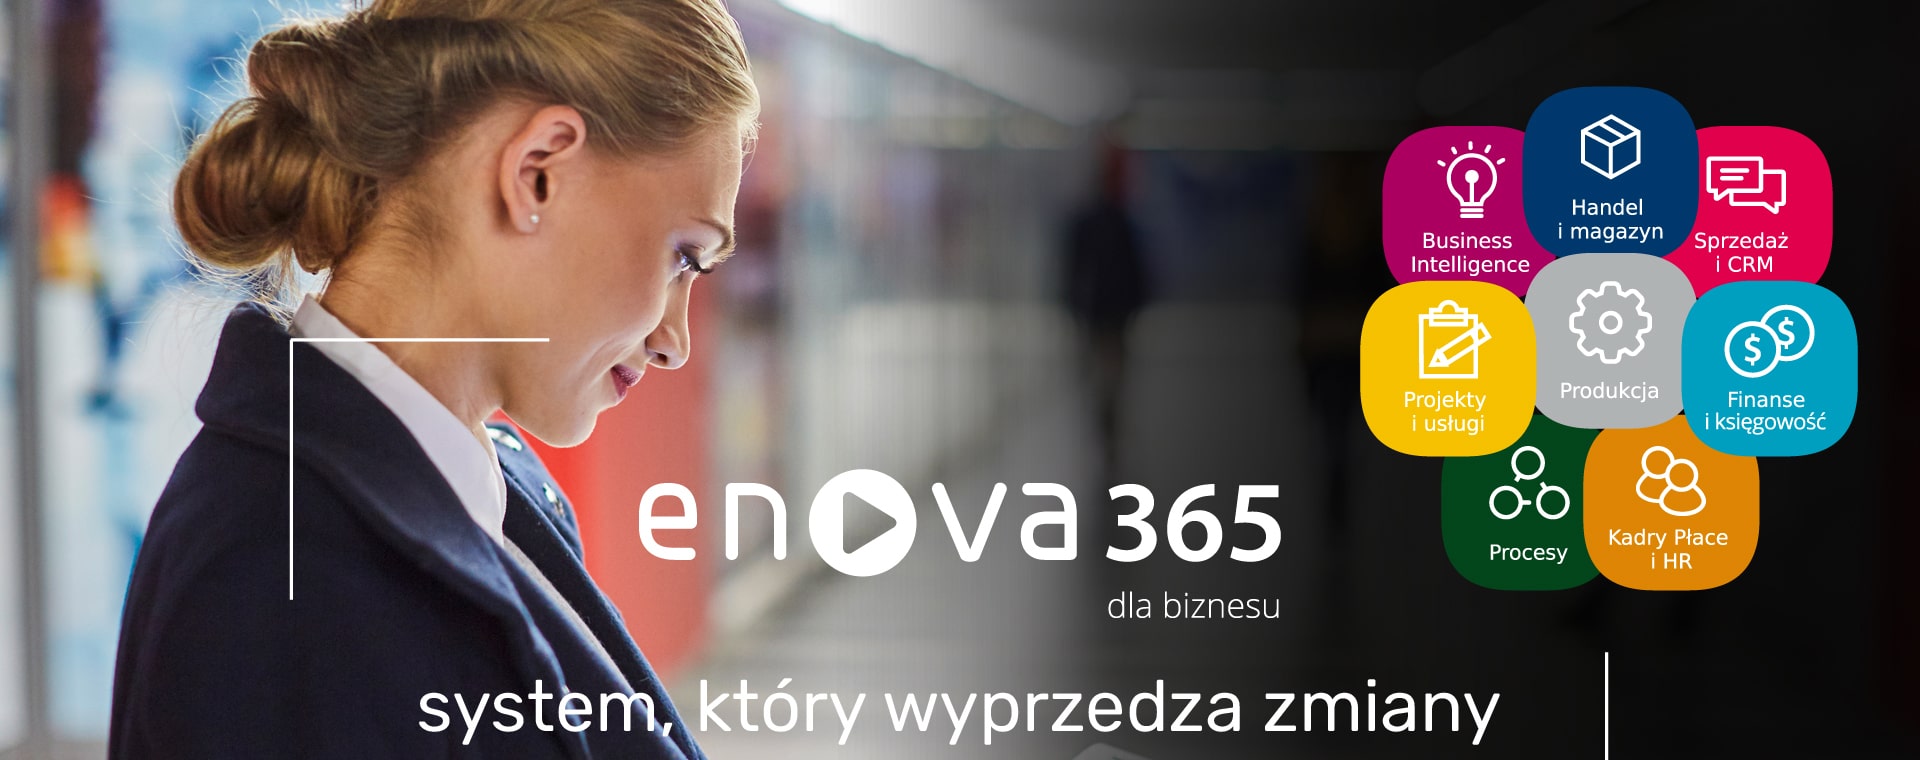 banner enova365 system, który wyprzedza zmiany